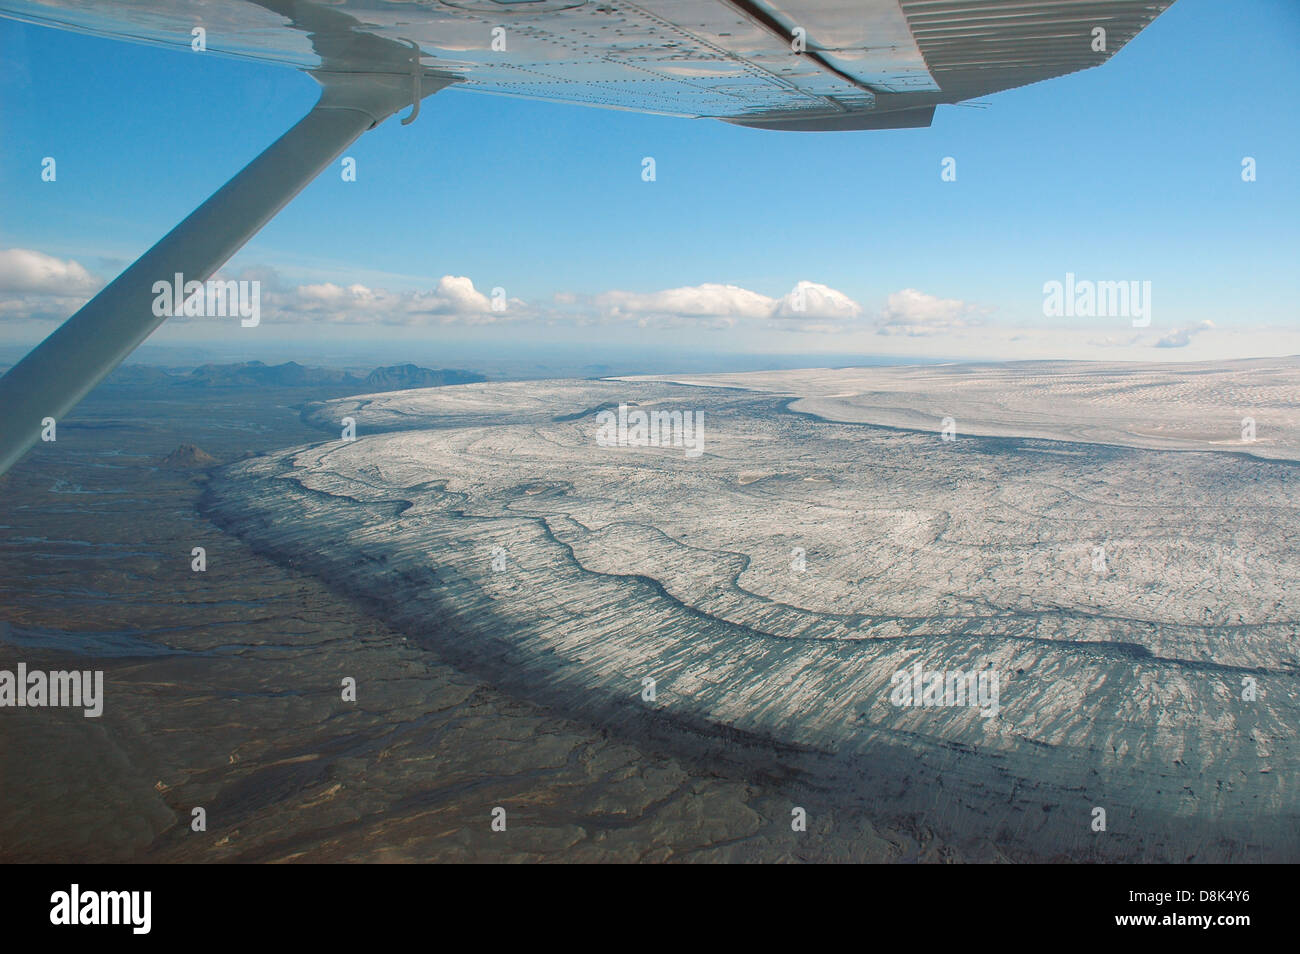 Recul de bord d'un glacier en Islande à partir de prises d'une visite touristique en avion. Les cours d'eau de fonte peut être vu. Banque D'Images